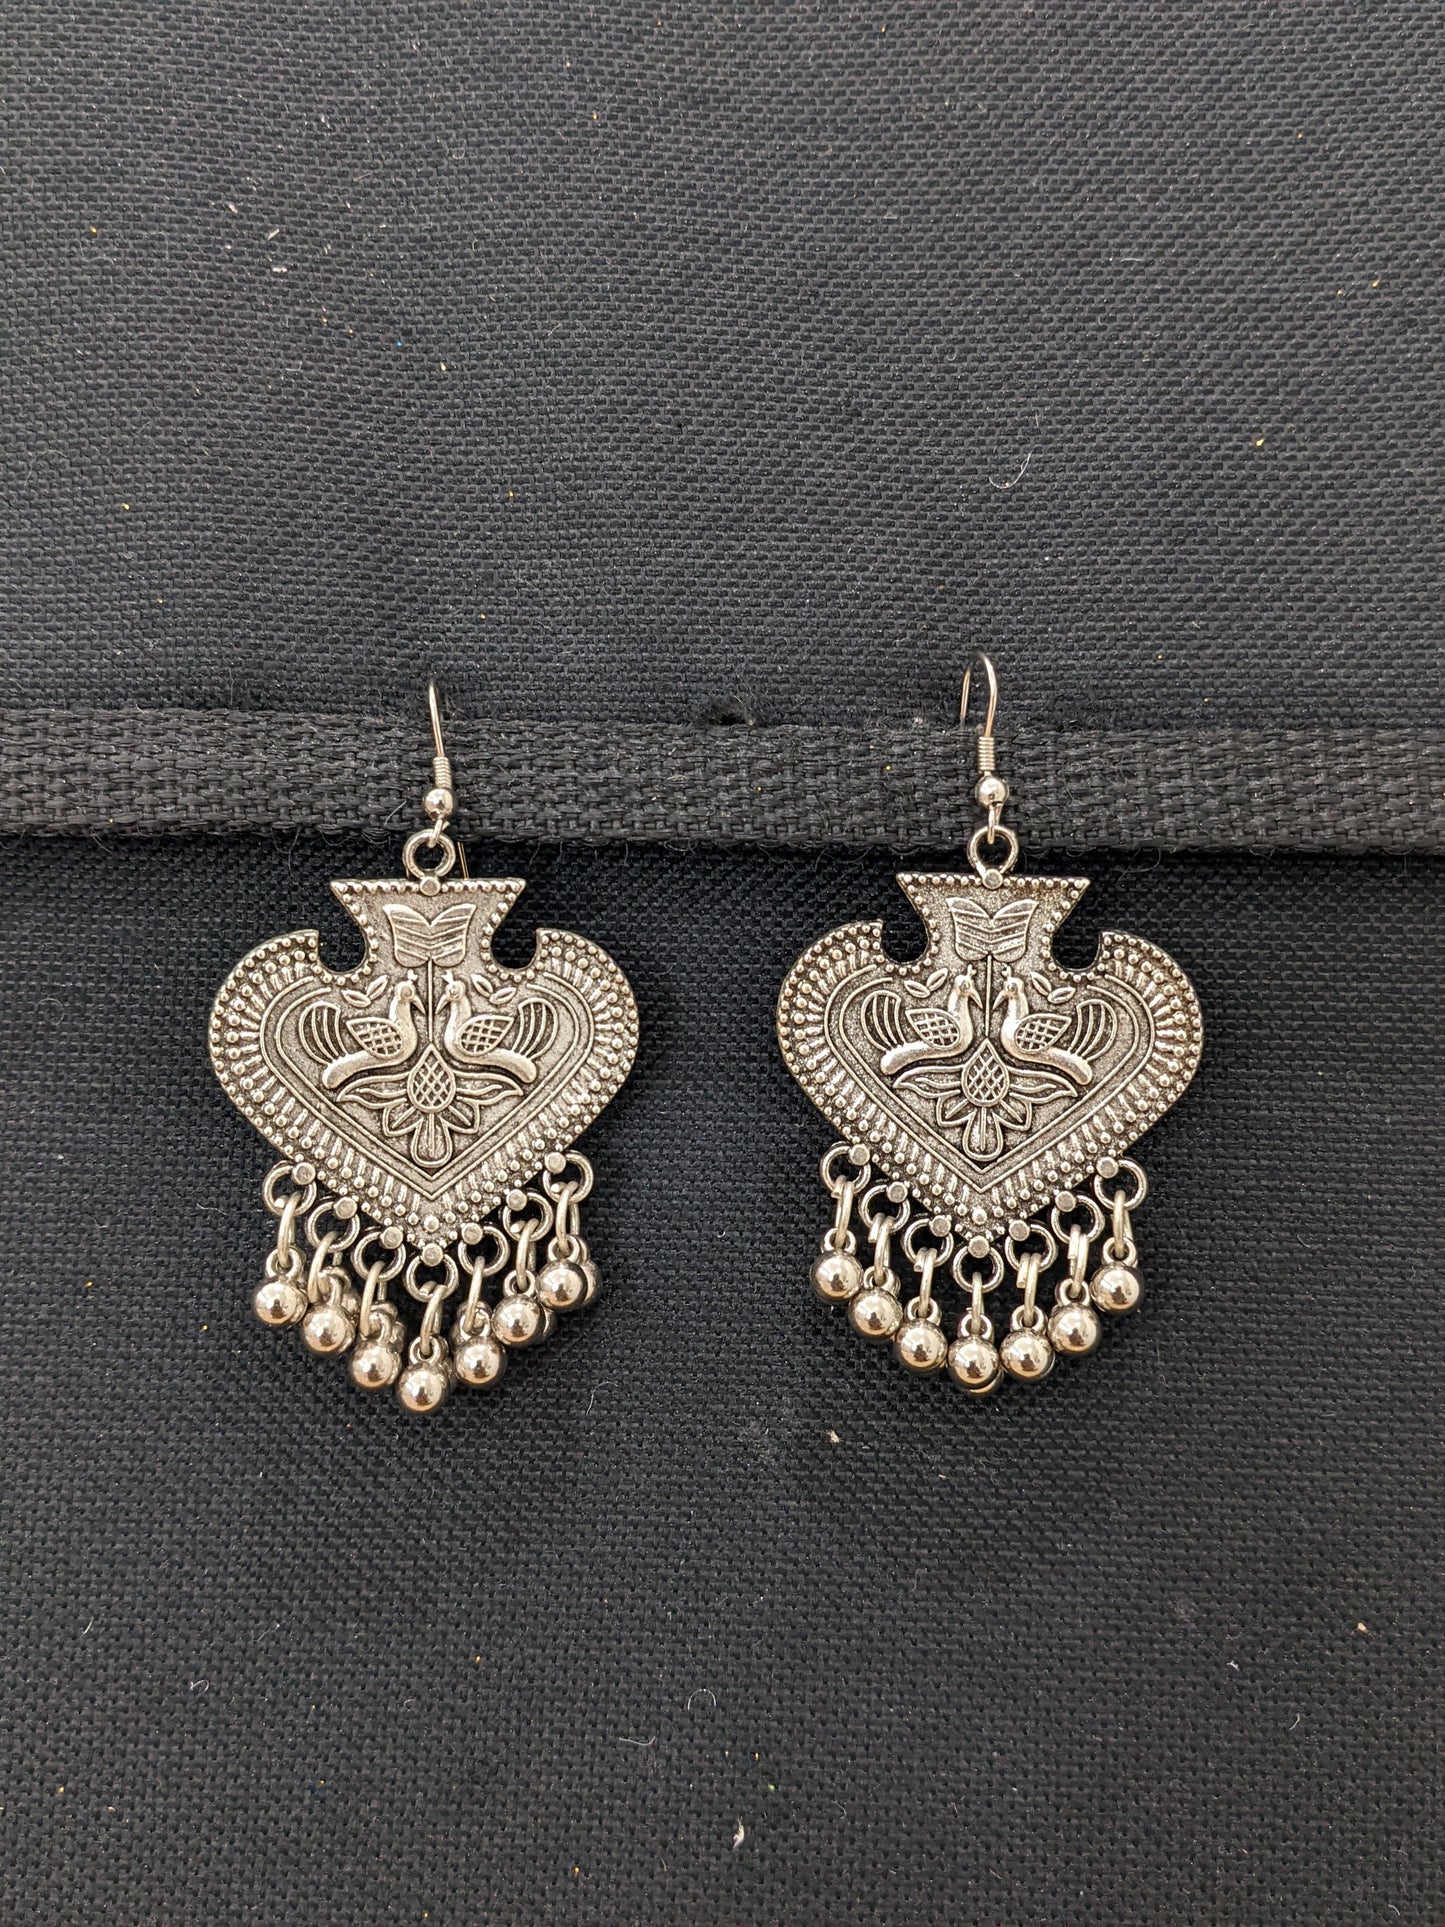 Oxidized Silver Peacock Hook Earrings